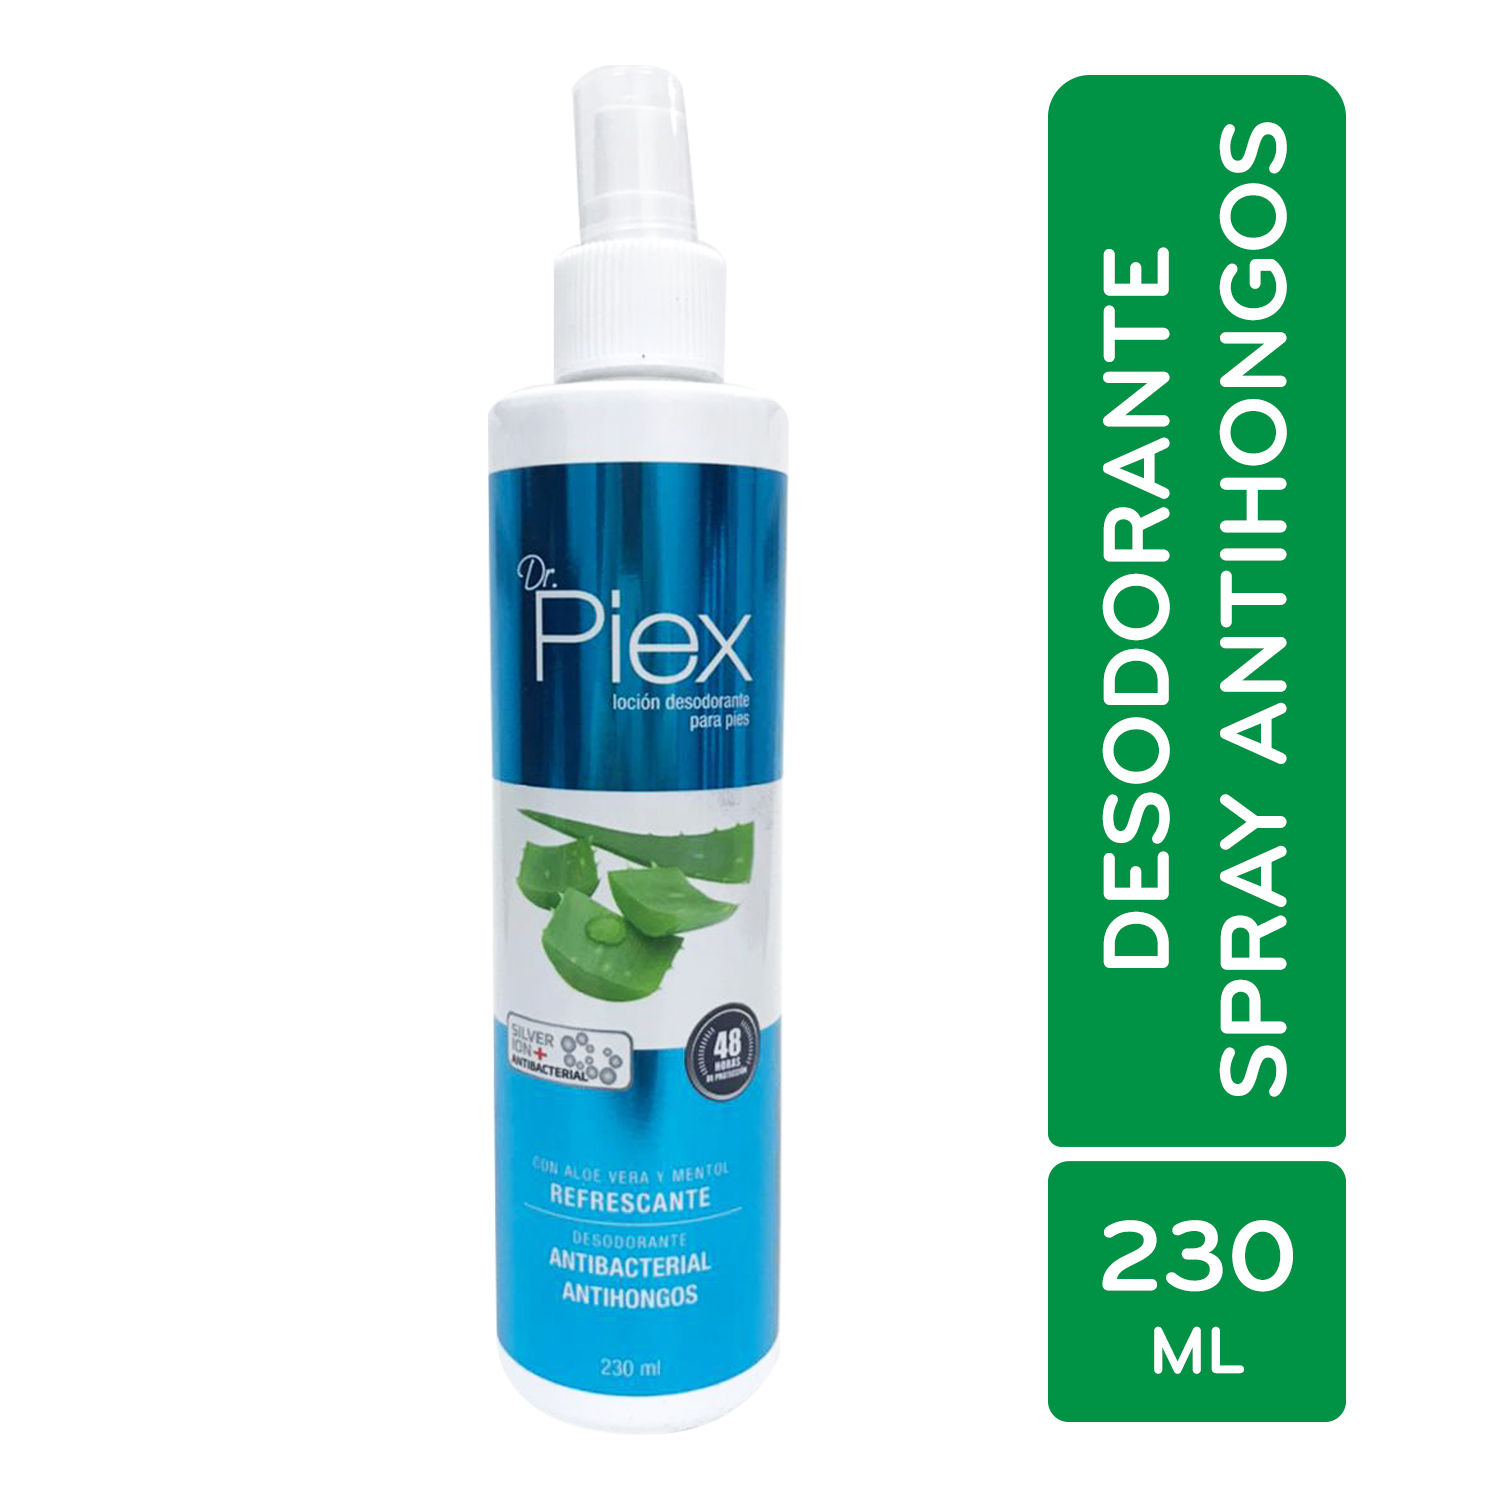 Desodorante Spray Antihongos Refrescante Piex Envase 230 Ml